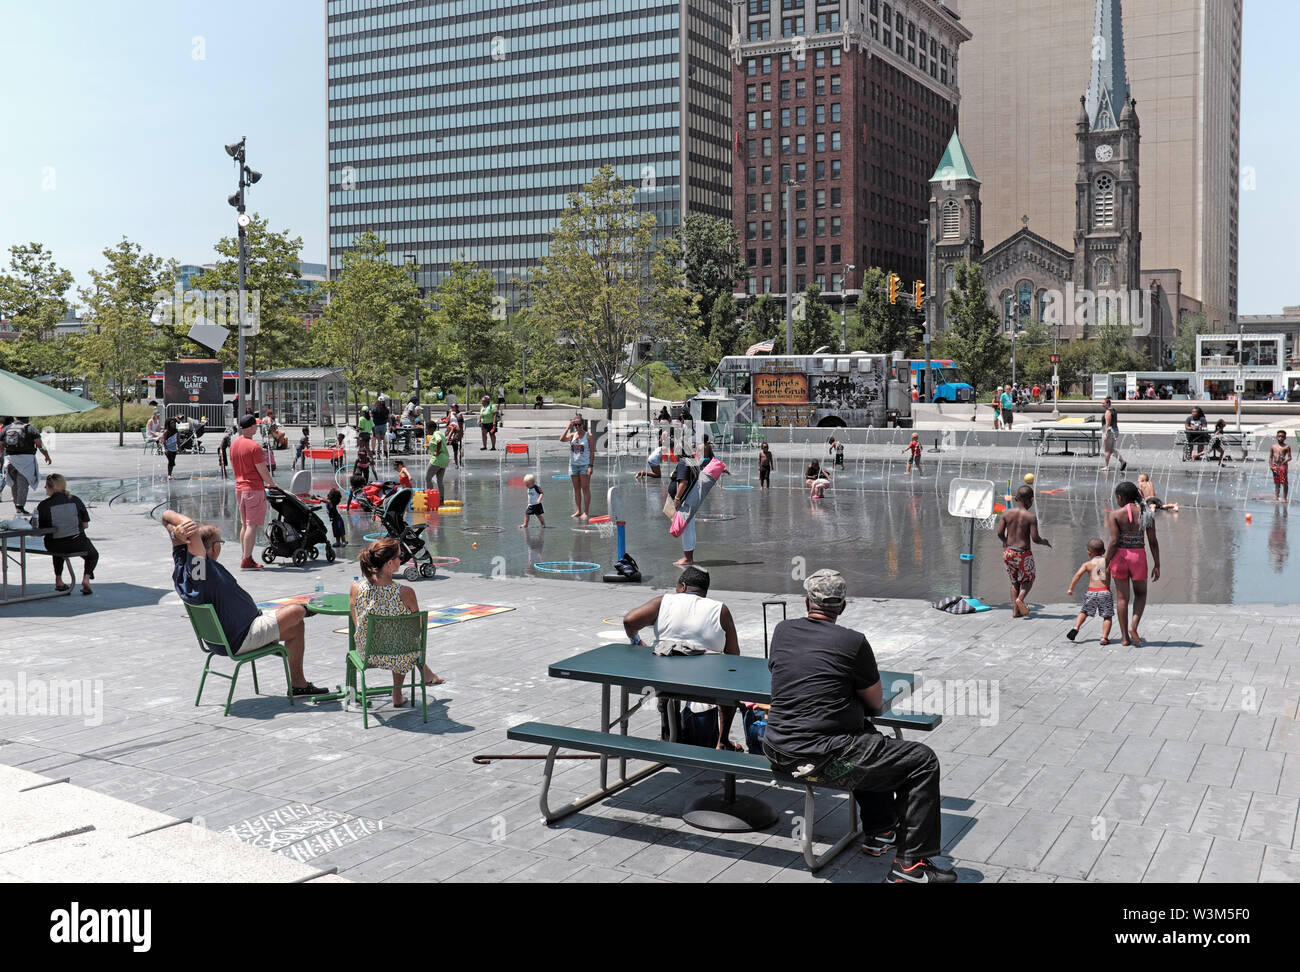 Pubblica piazza nel centro di Cleveland Ohio è un magnete nelle calde giornate estive dove la gente può raffreddare di nelle pubbliche fontane d'acqua. Foto Stock